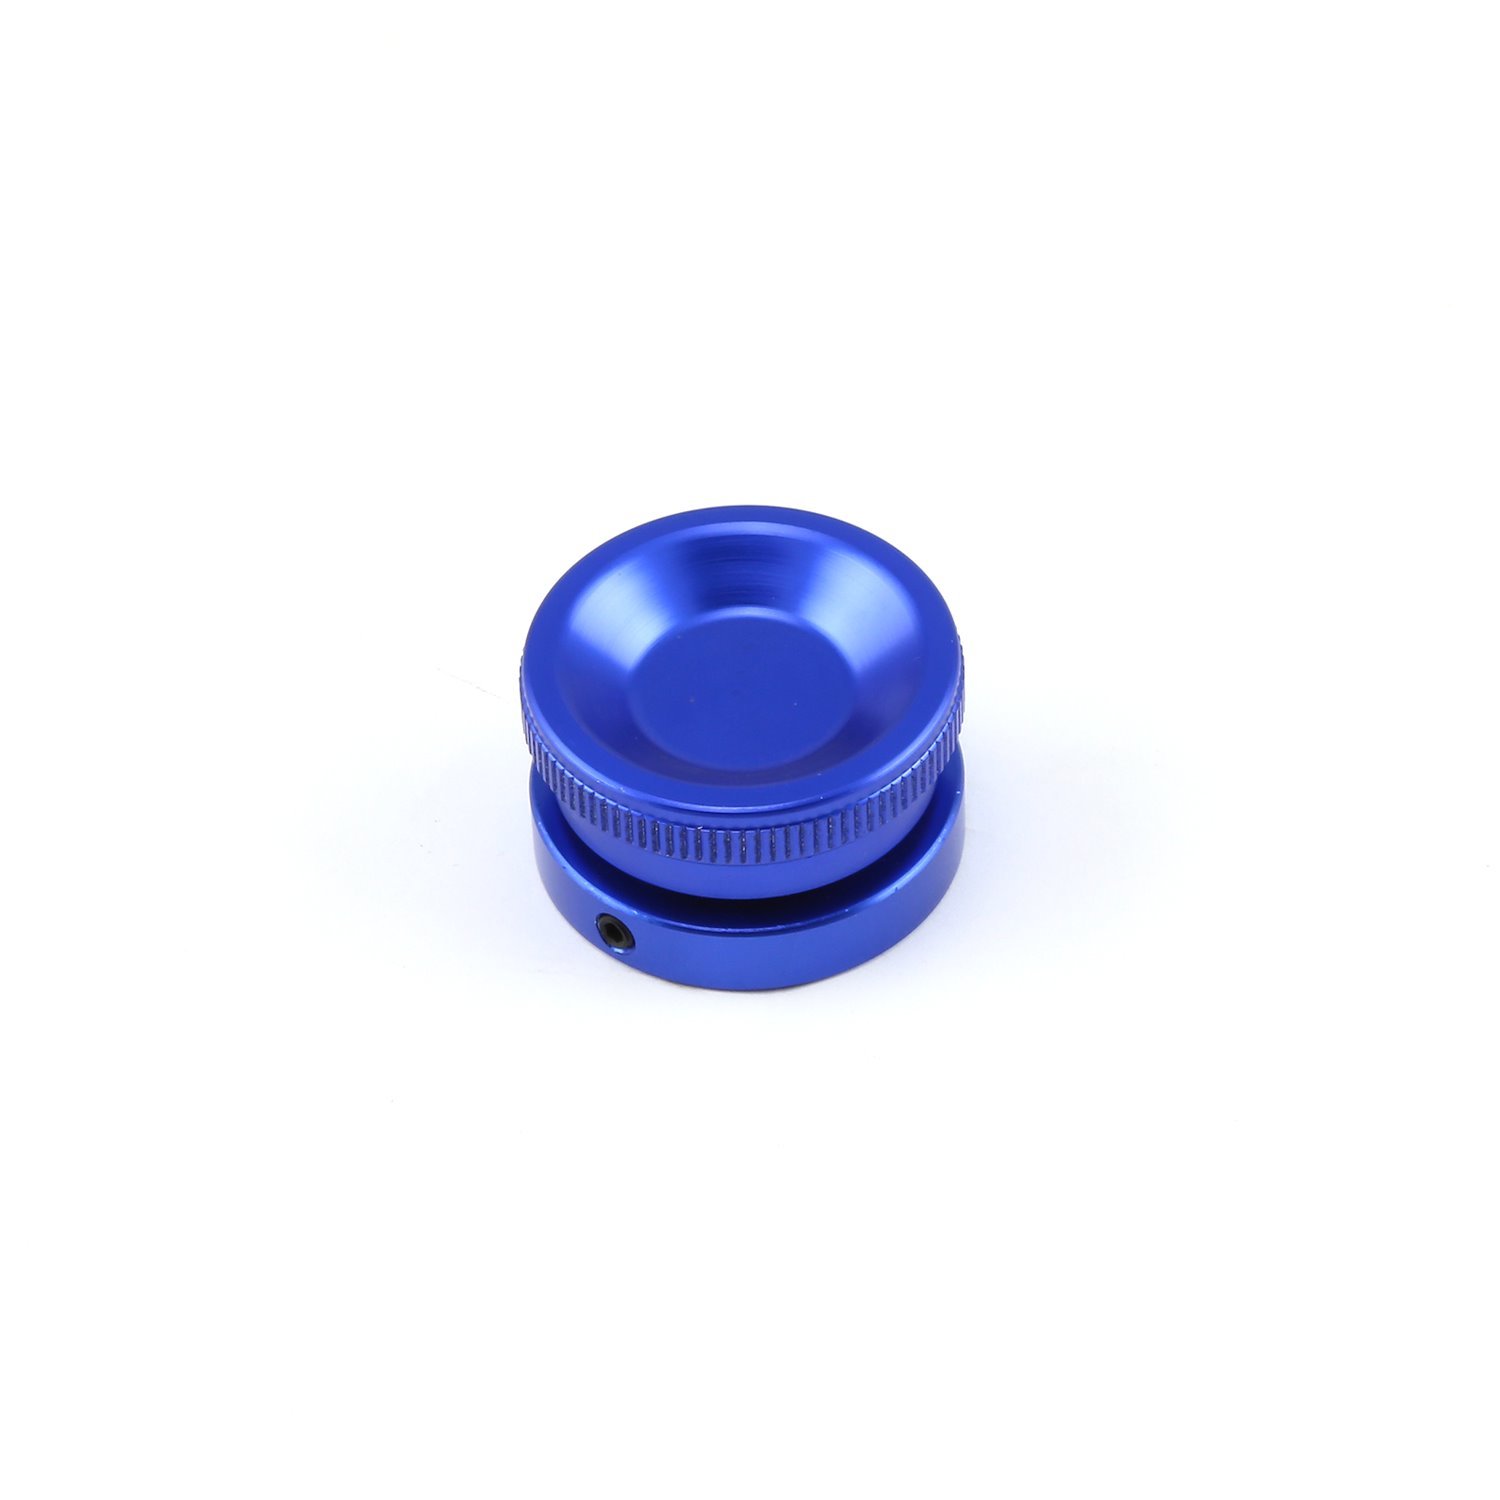 Billet Aluminum Screw-in Valve Cover Oil Filler Cap Kit - Blue Anodized